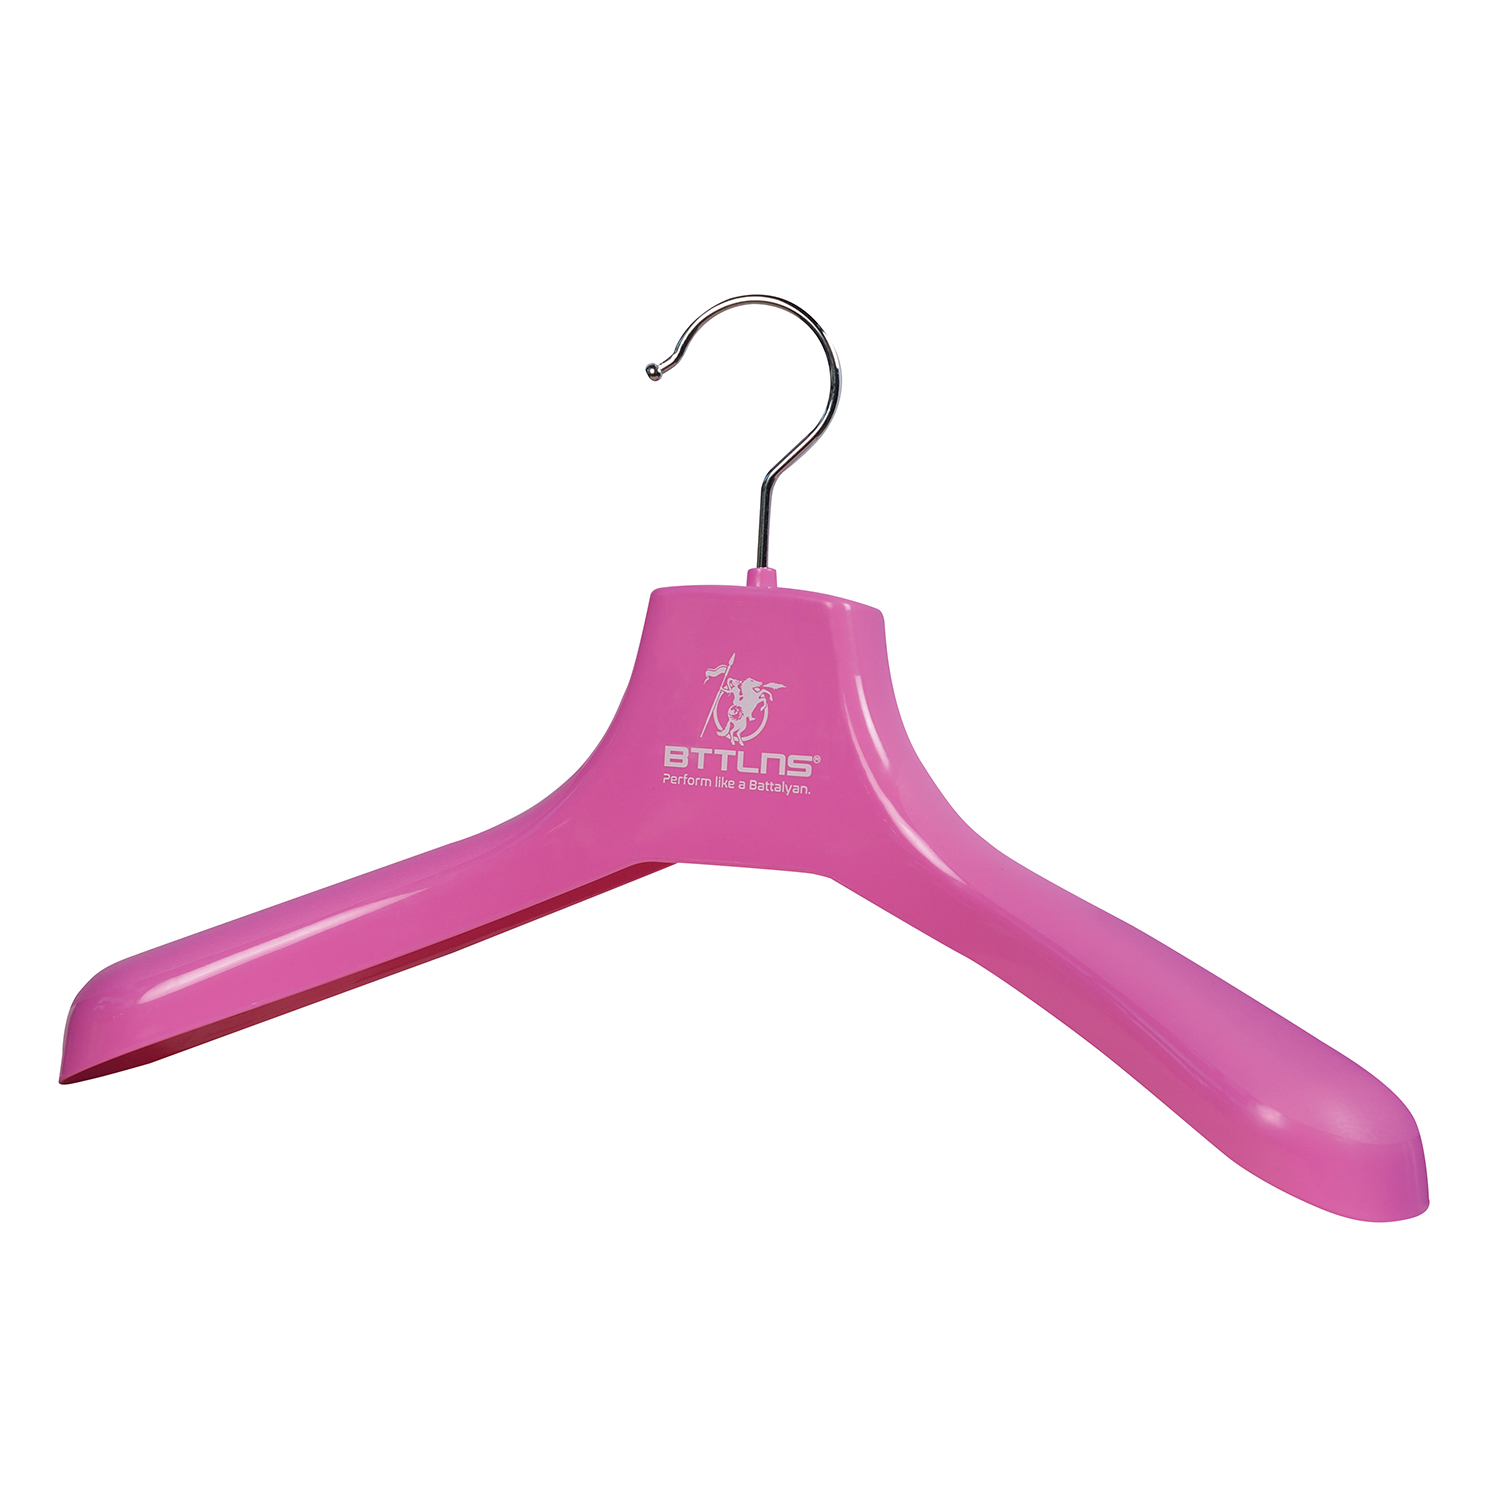 BTTLNS Wetsuit clothing hanger Defender 2.0 pink  0320001-072